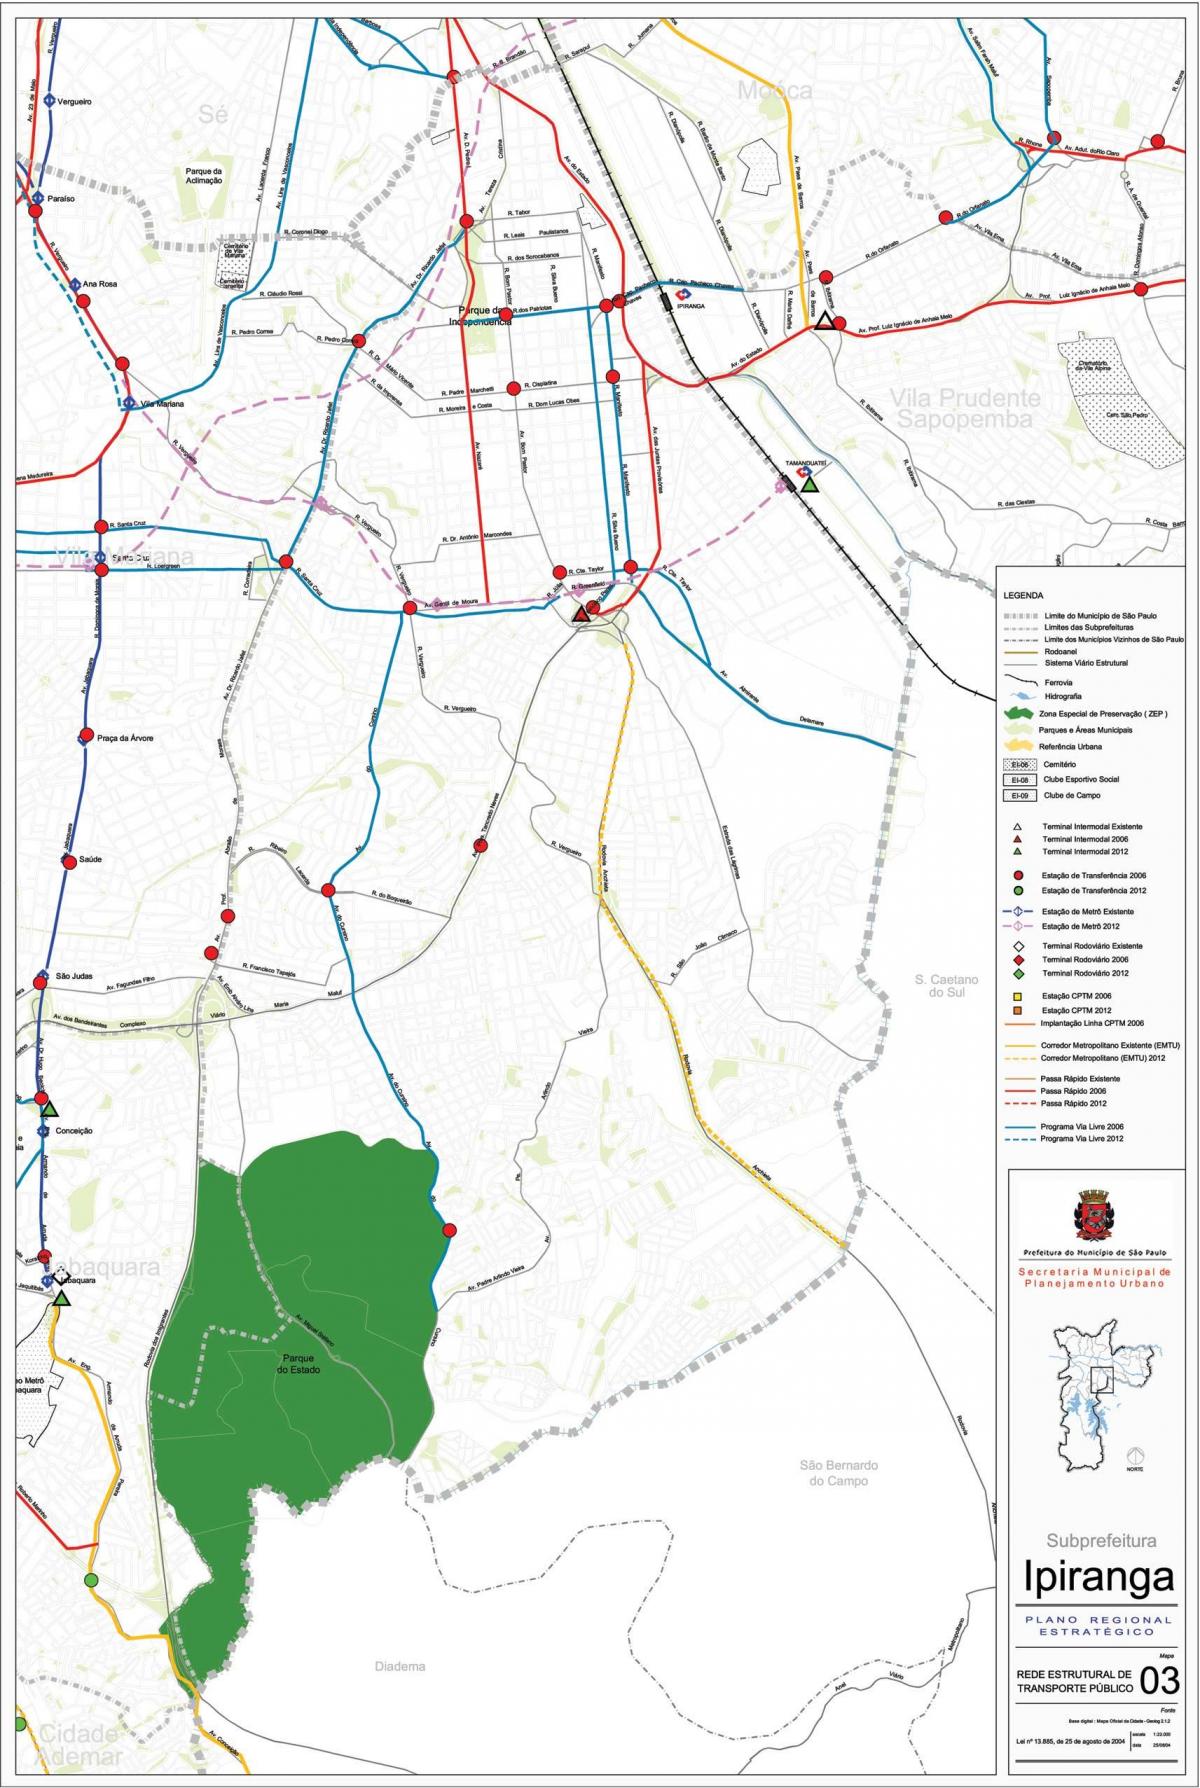 નકશો Ipiranga સાઓ પાઉલો - જાહેર પરિવહન